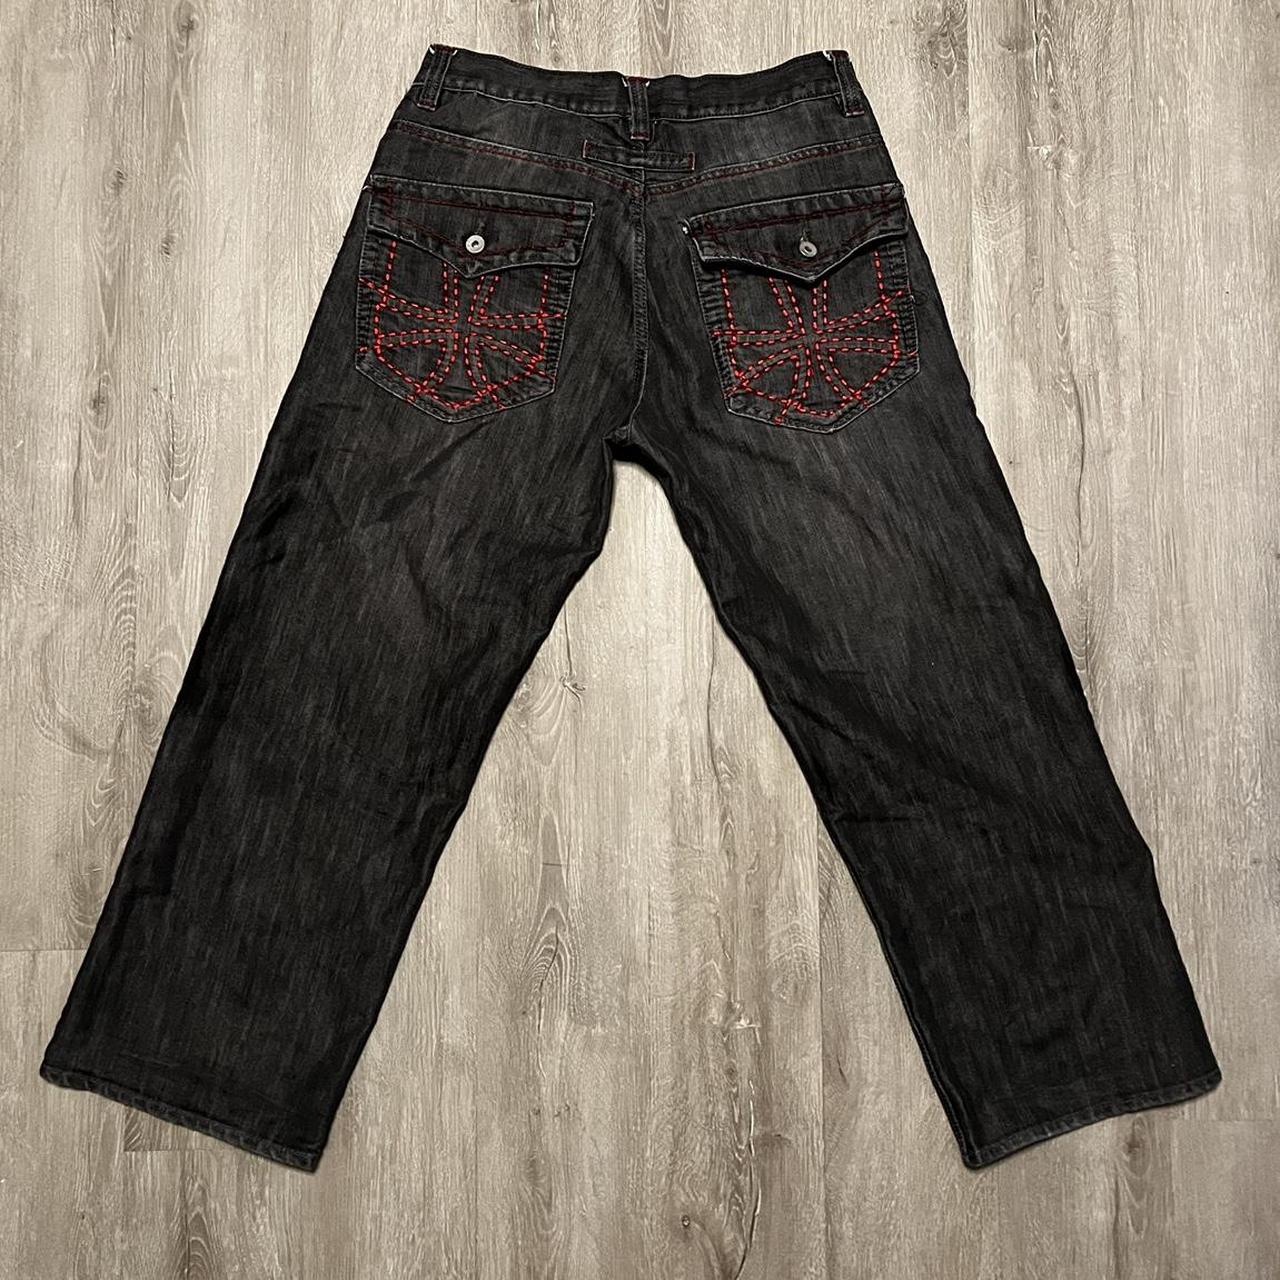 Avirex Cross Jeans - Size 34 x 30 Great... - Depop